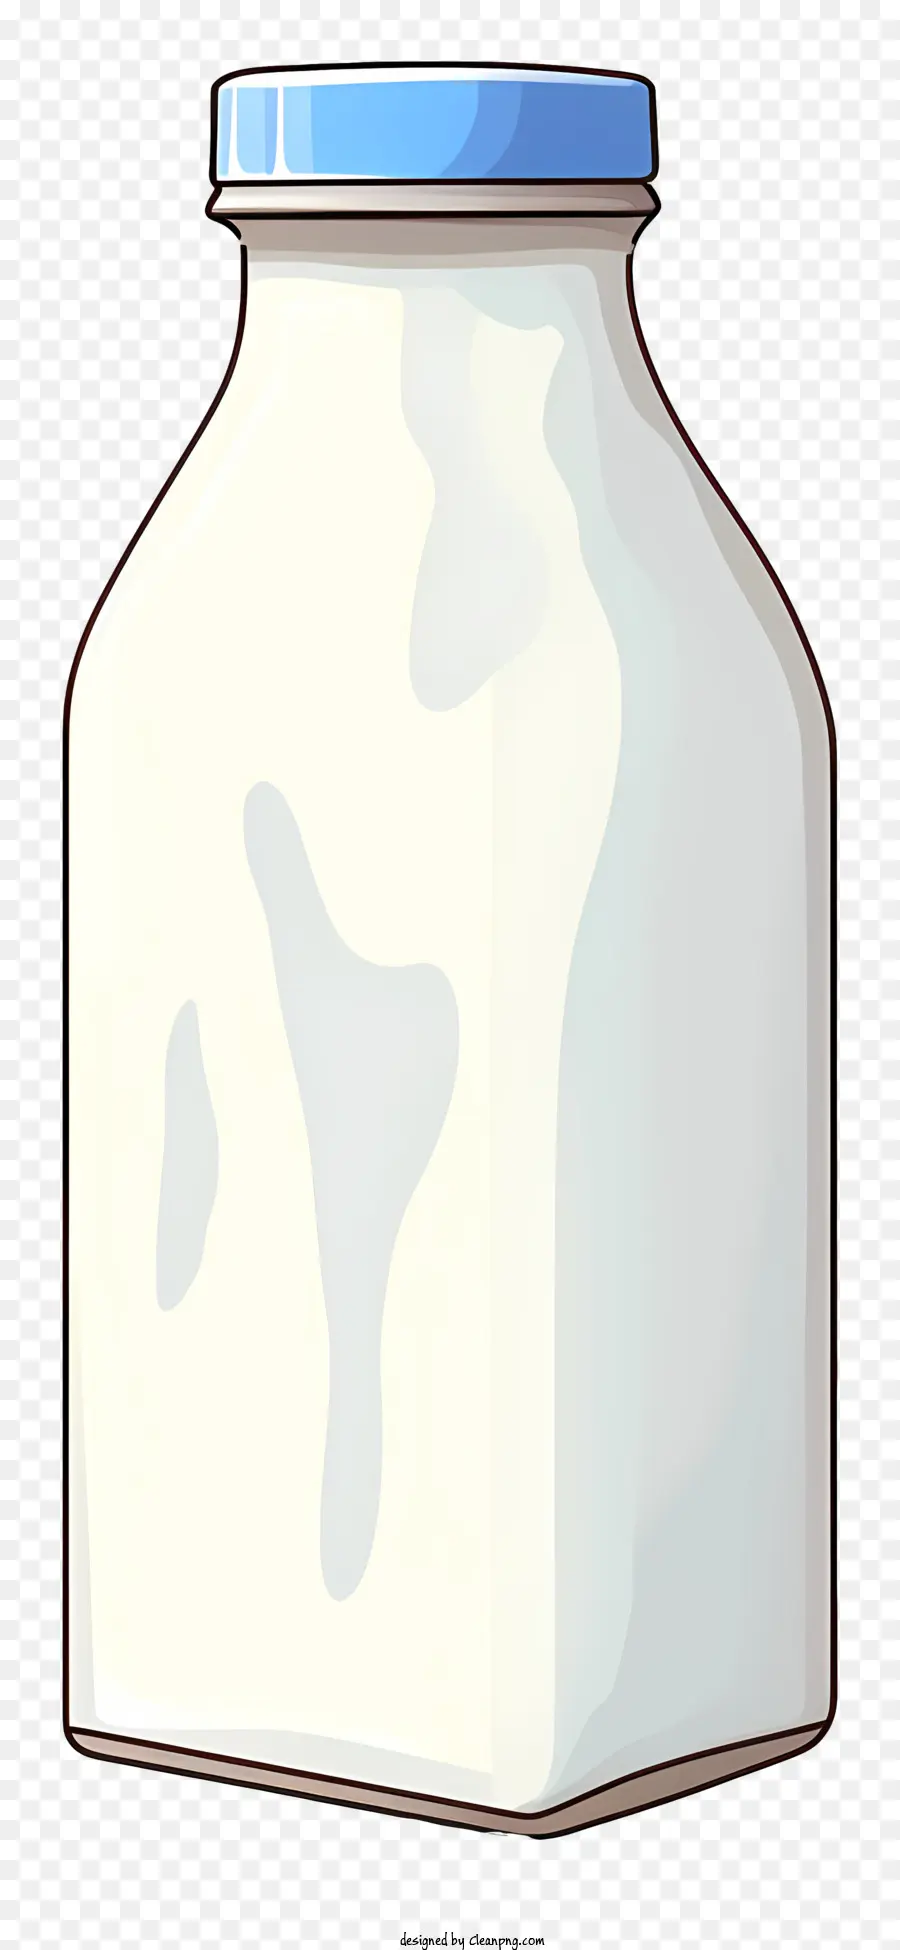 bình sữa chai chai màu xanh nắp chai rỗng nền đen - Một hình ảnh do máy tính tạo ra một nửa chai sữa trống